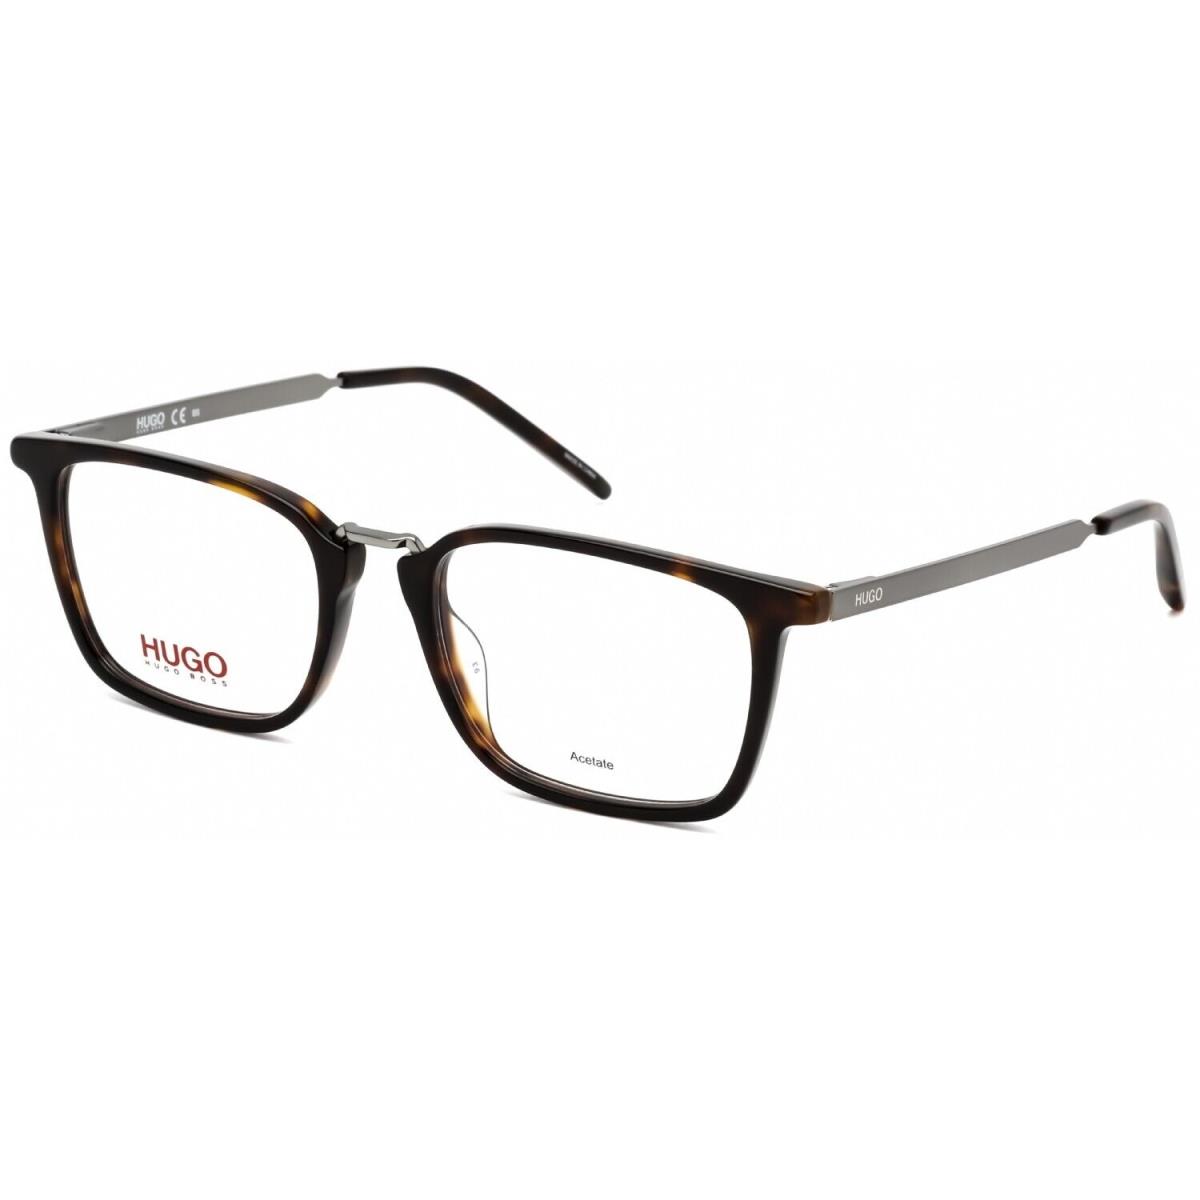 Hugo Boss HG1033 086 Rectangle Dark Havana Eyeglasses - Frame: Dark Havana